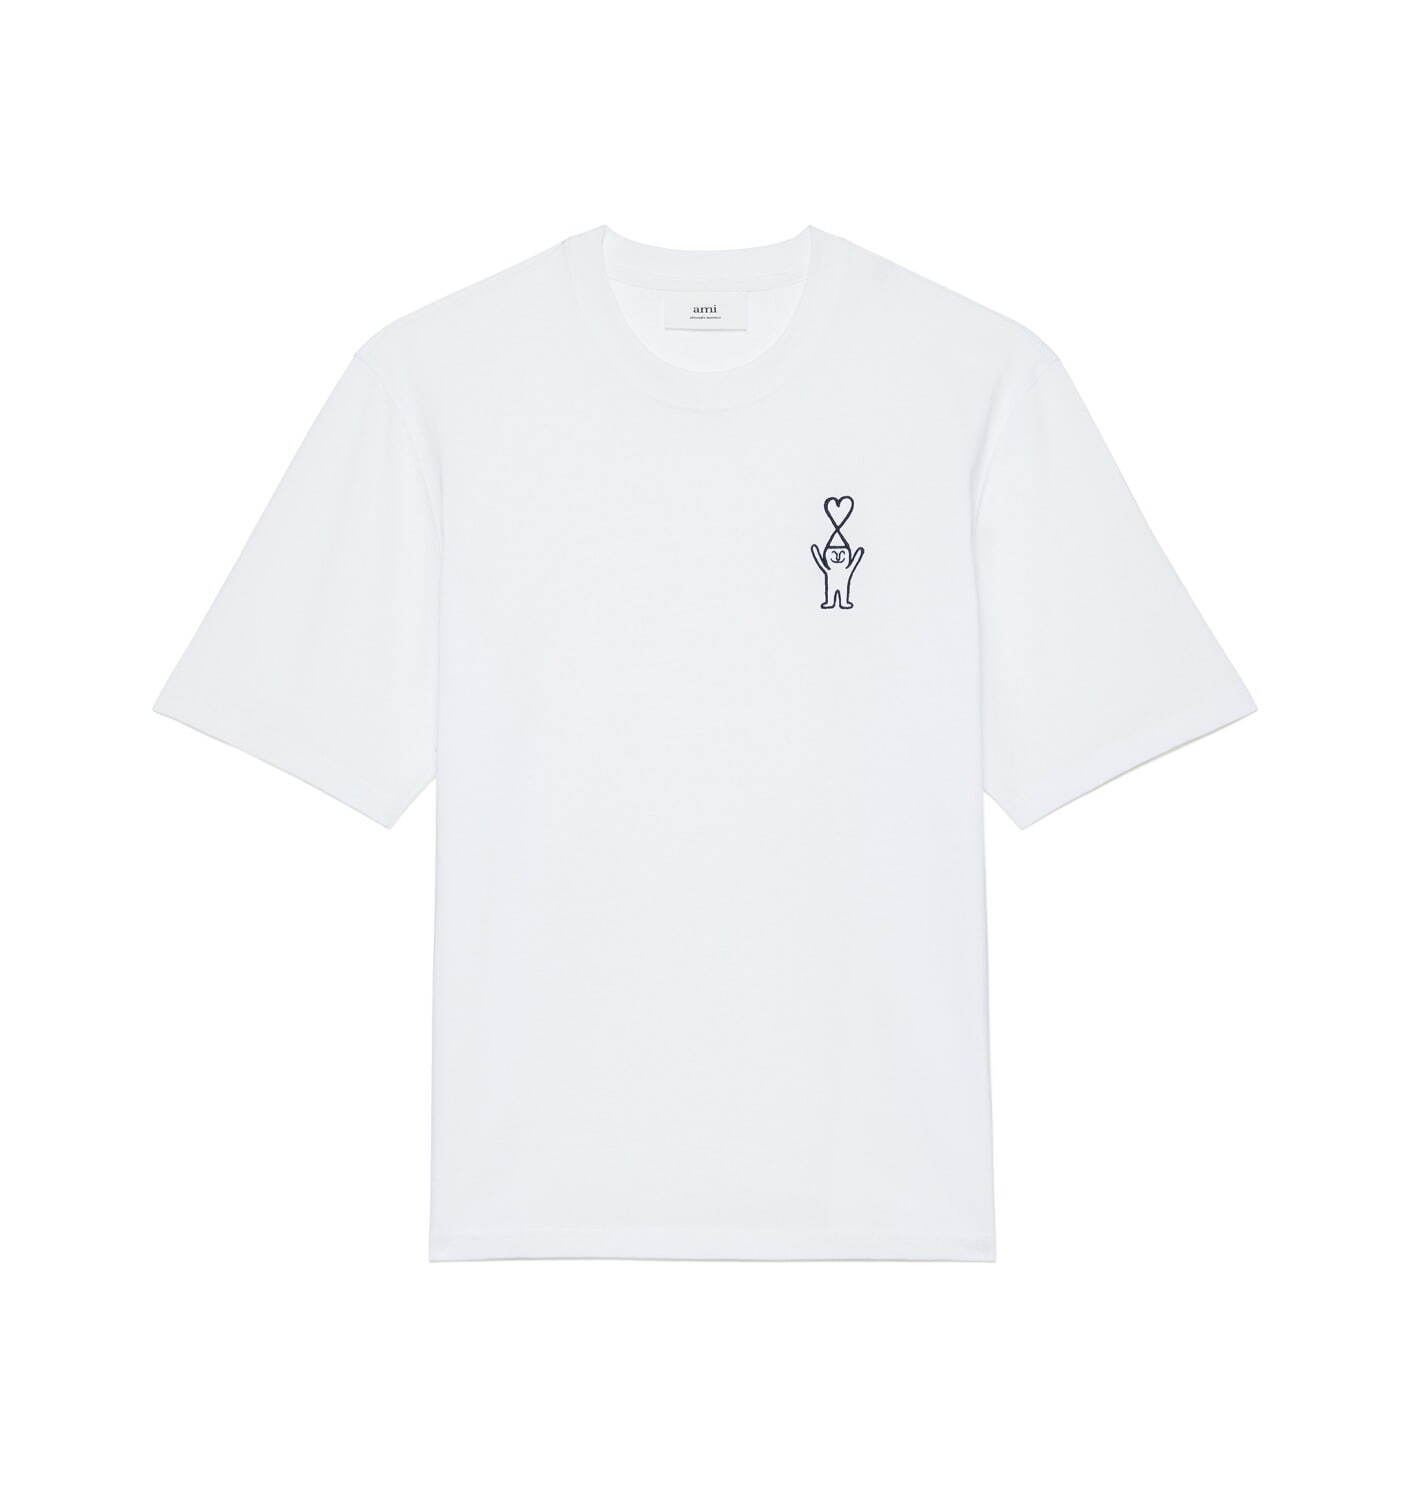 ユニセックス Tシャツ アミ×ジャン・ジュリアン 22,000円